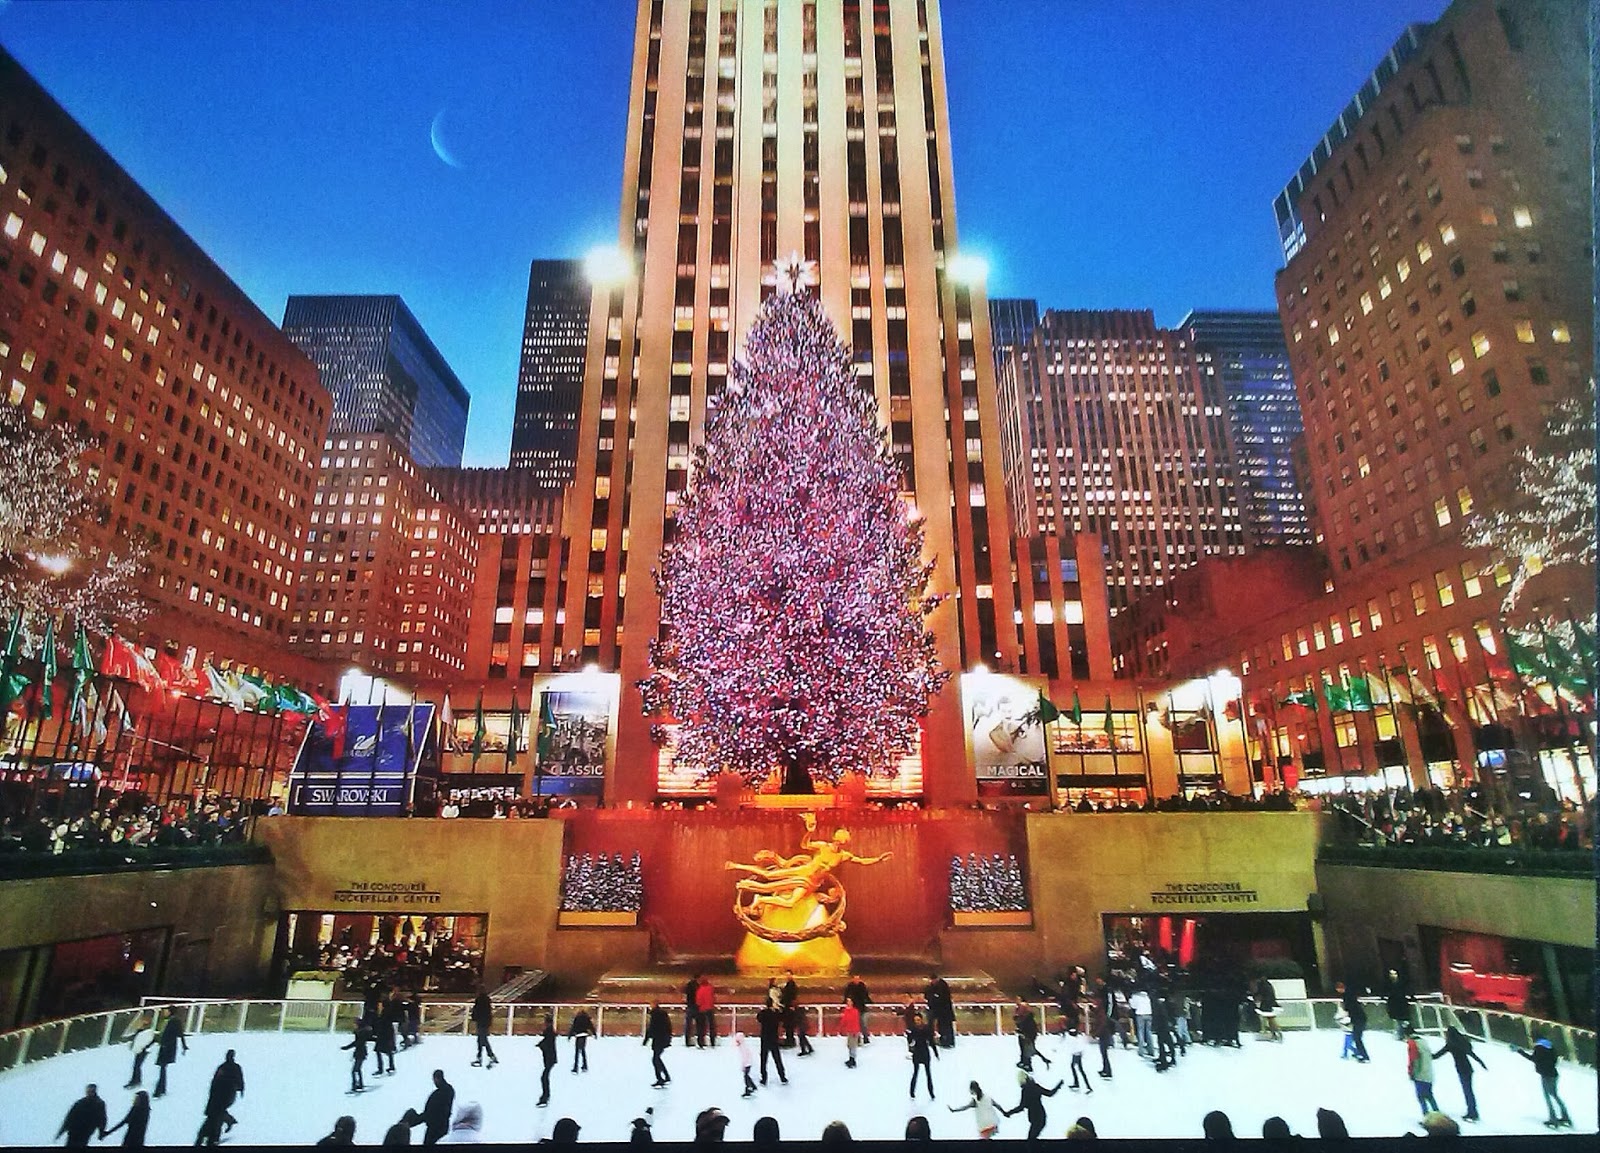 Mi Colección de Tarjetas Postales: Árbol de Navidad del Rockefeller Center - Estados Unidos